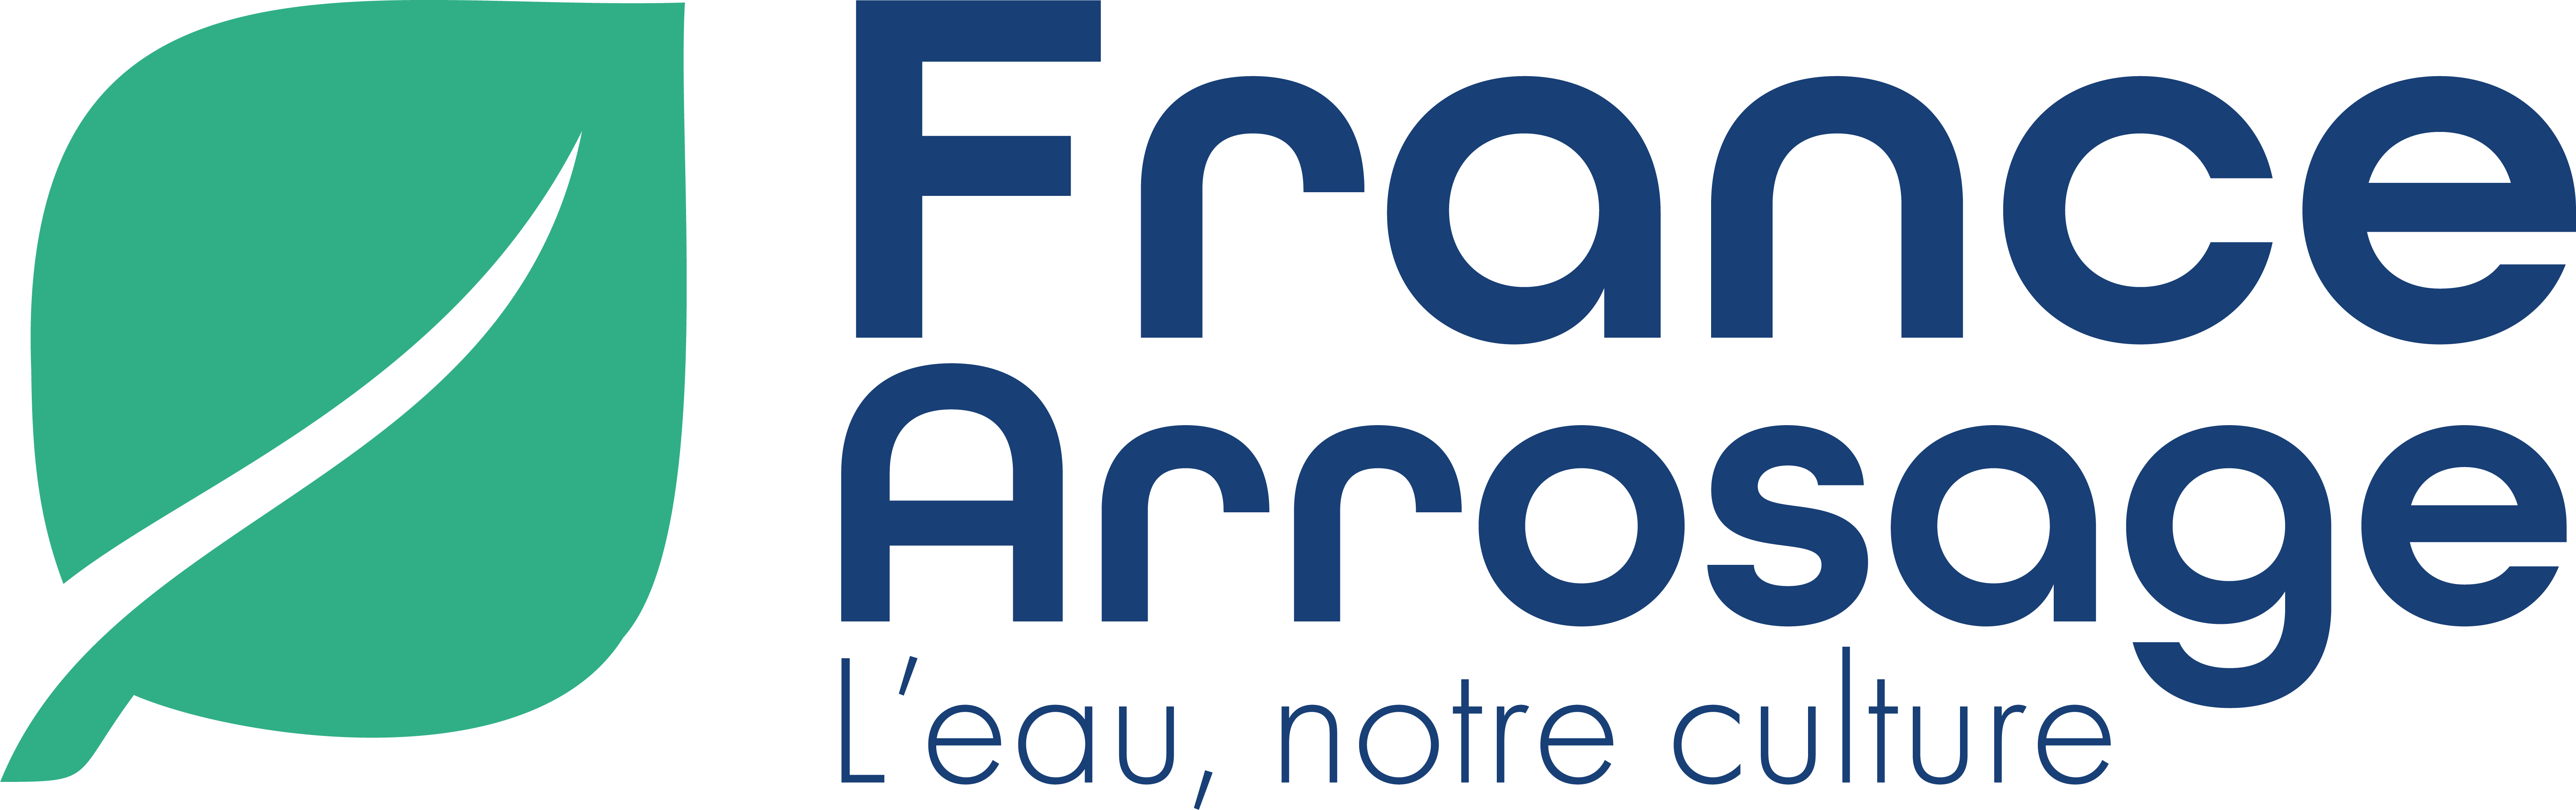 Logo FRANCE ARROSAGE